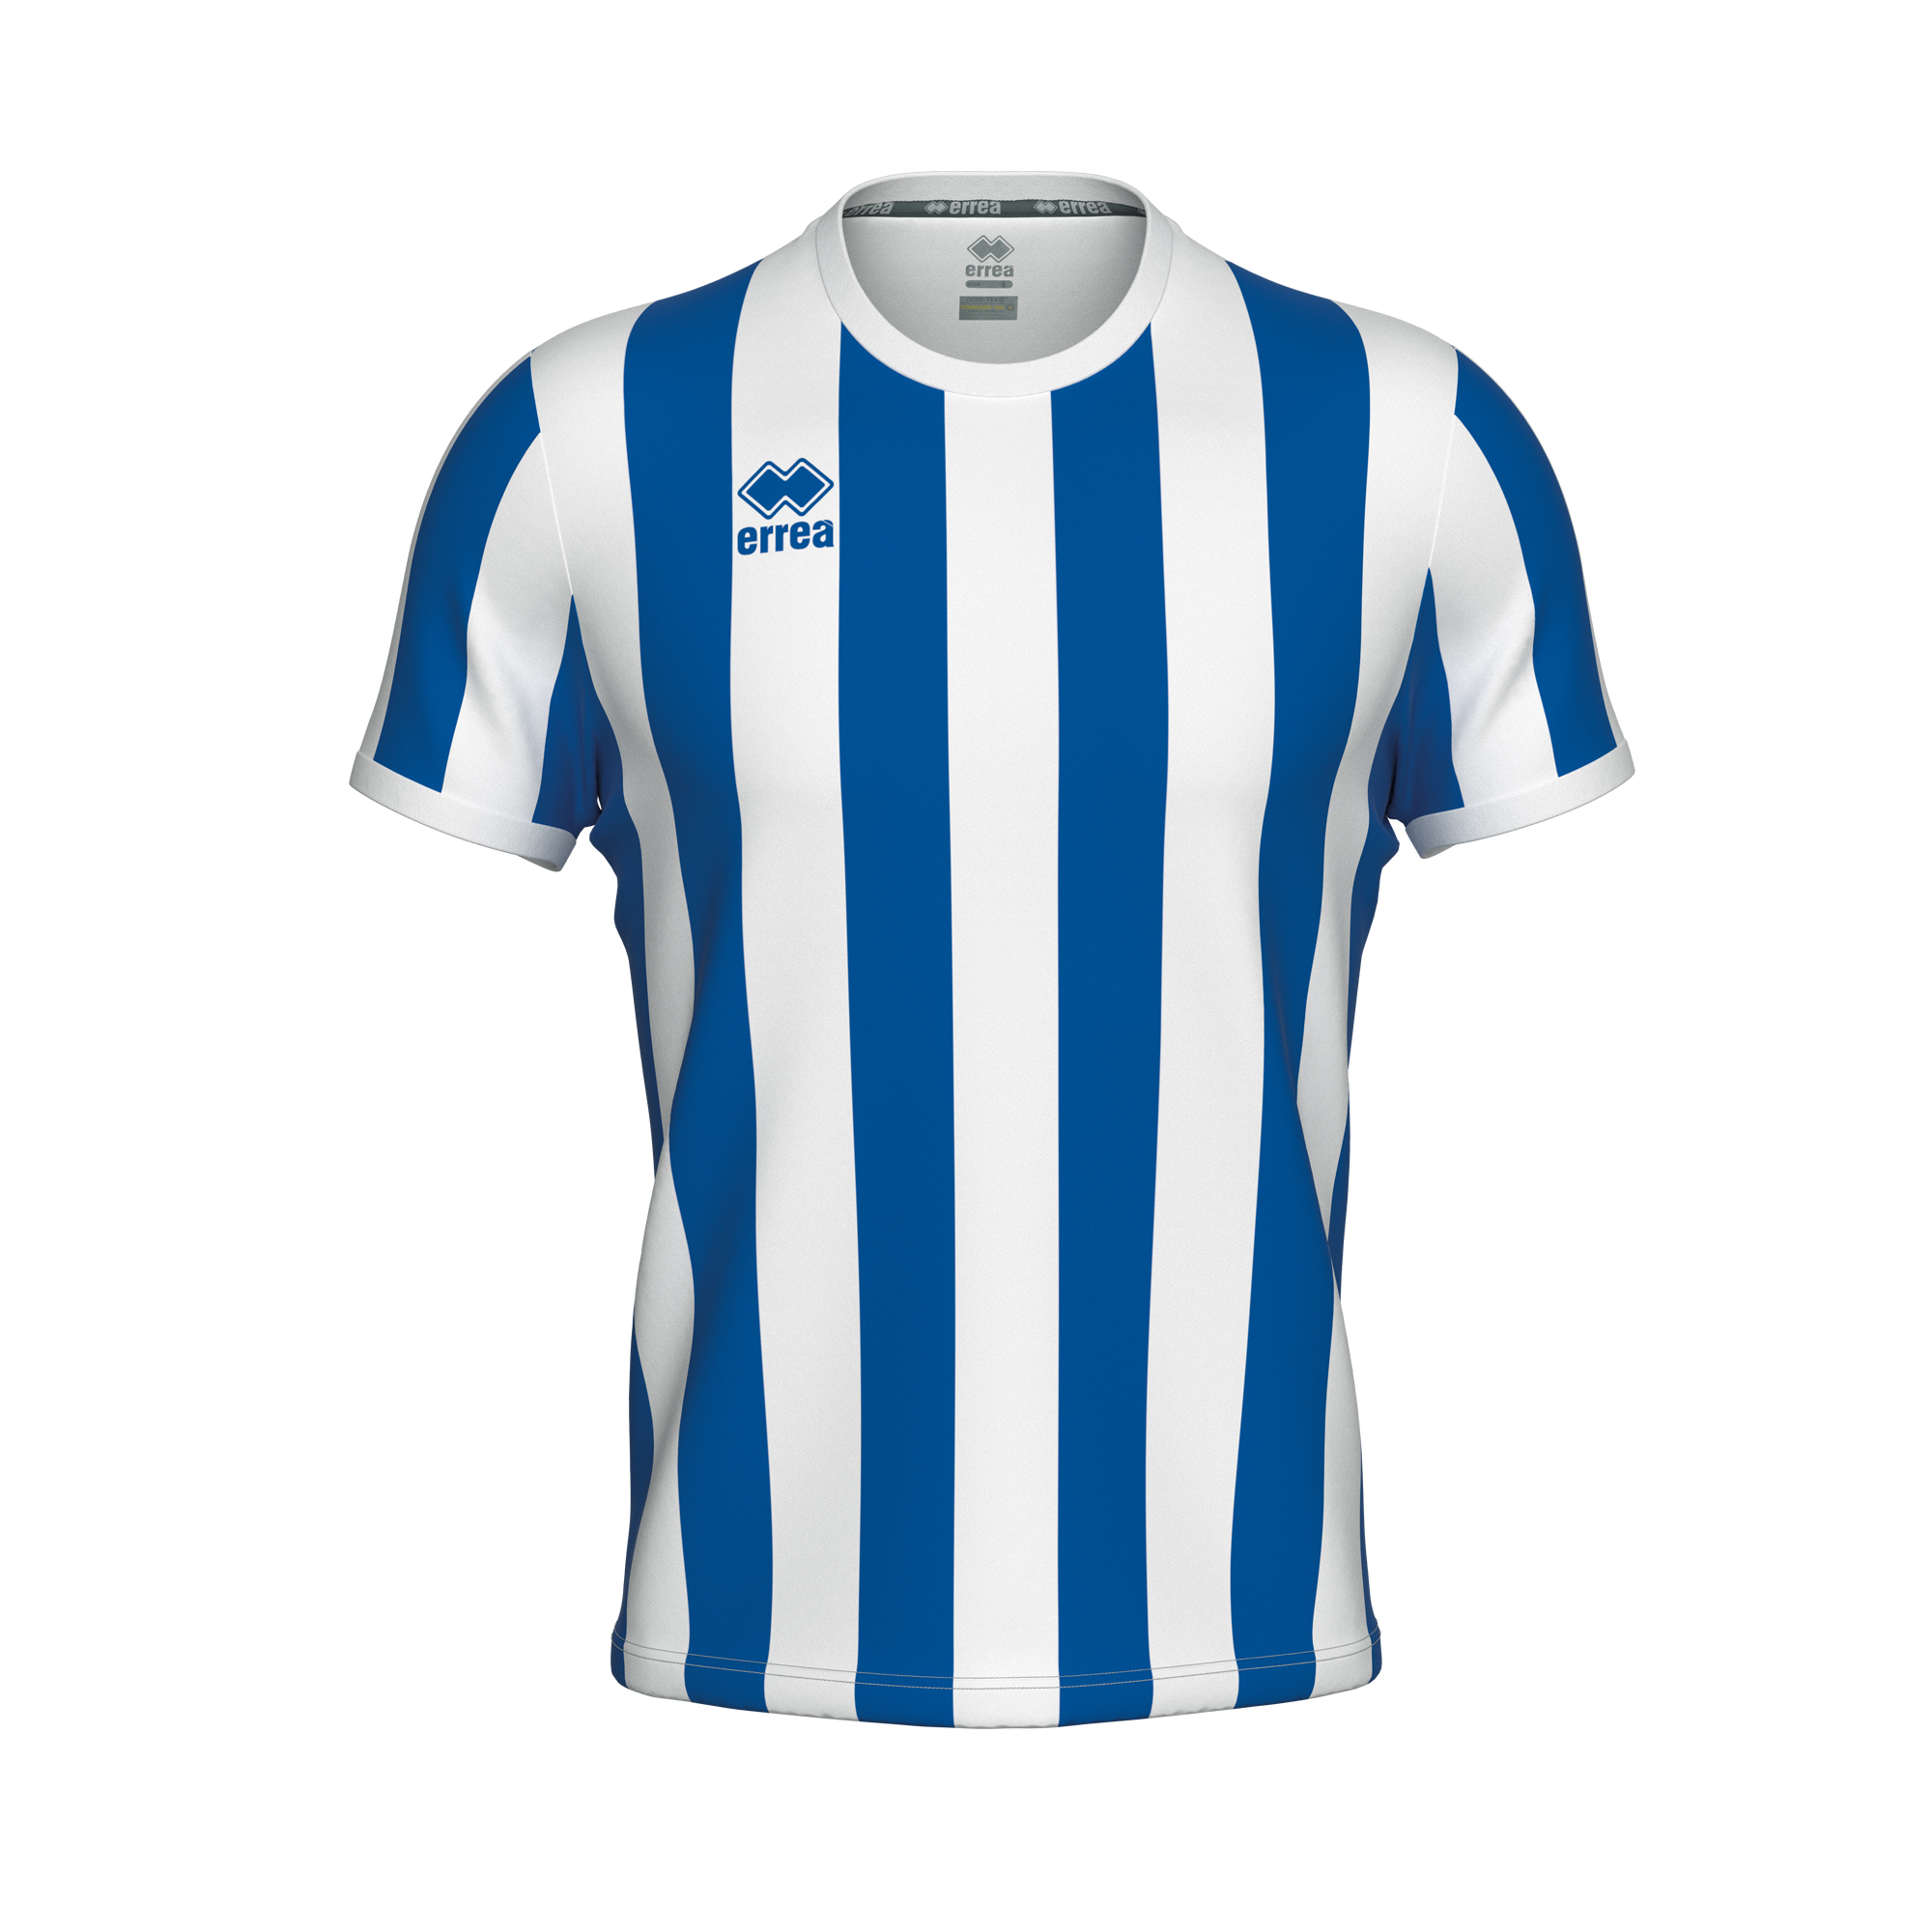 Errea Strip Football Shirt Blue White